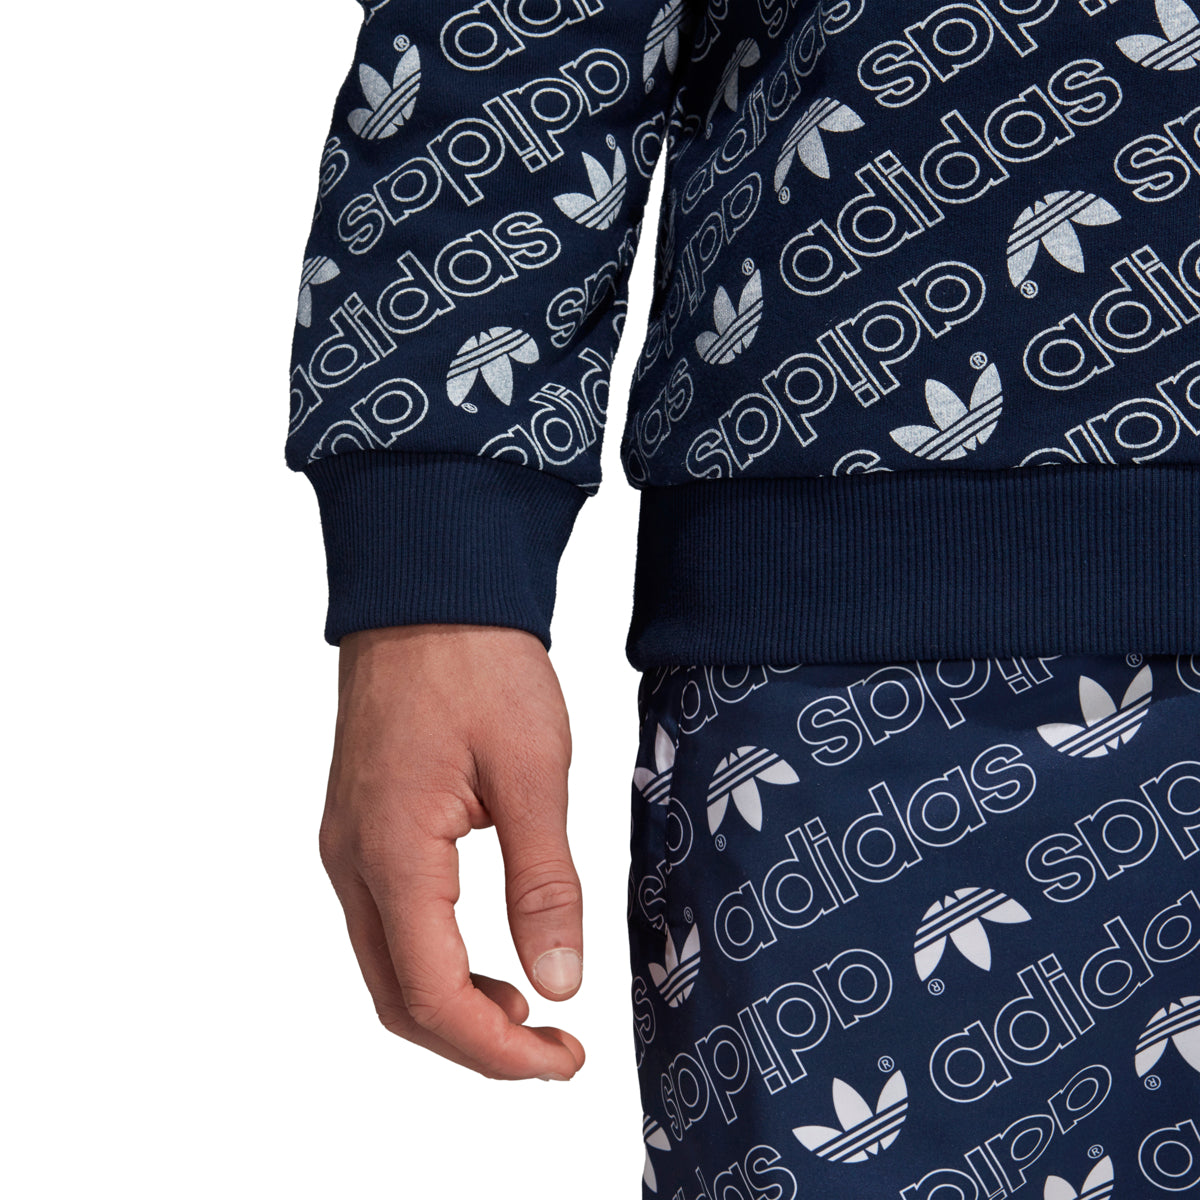 adidas Originals Monogram Full Zip Sweatshirt in Gray for Men